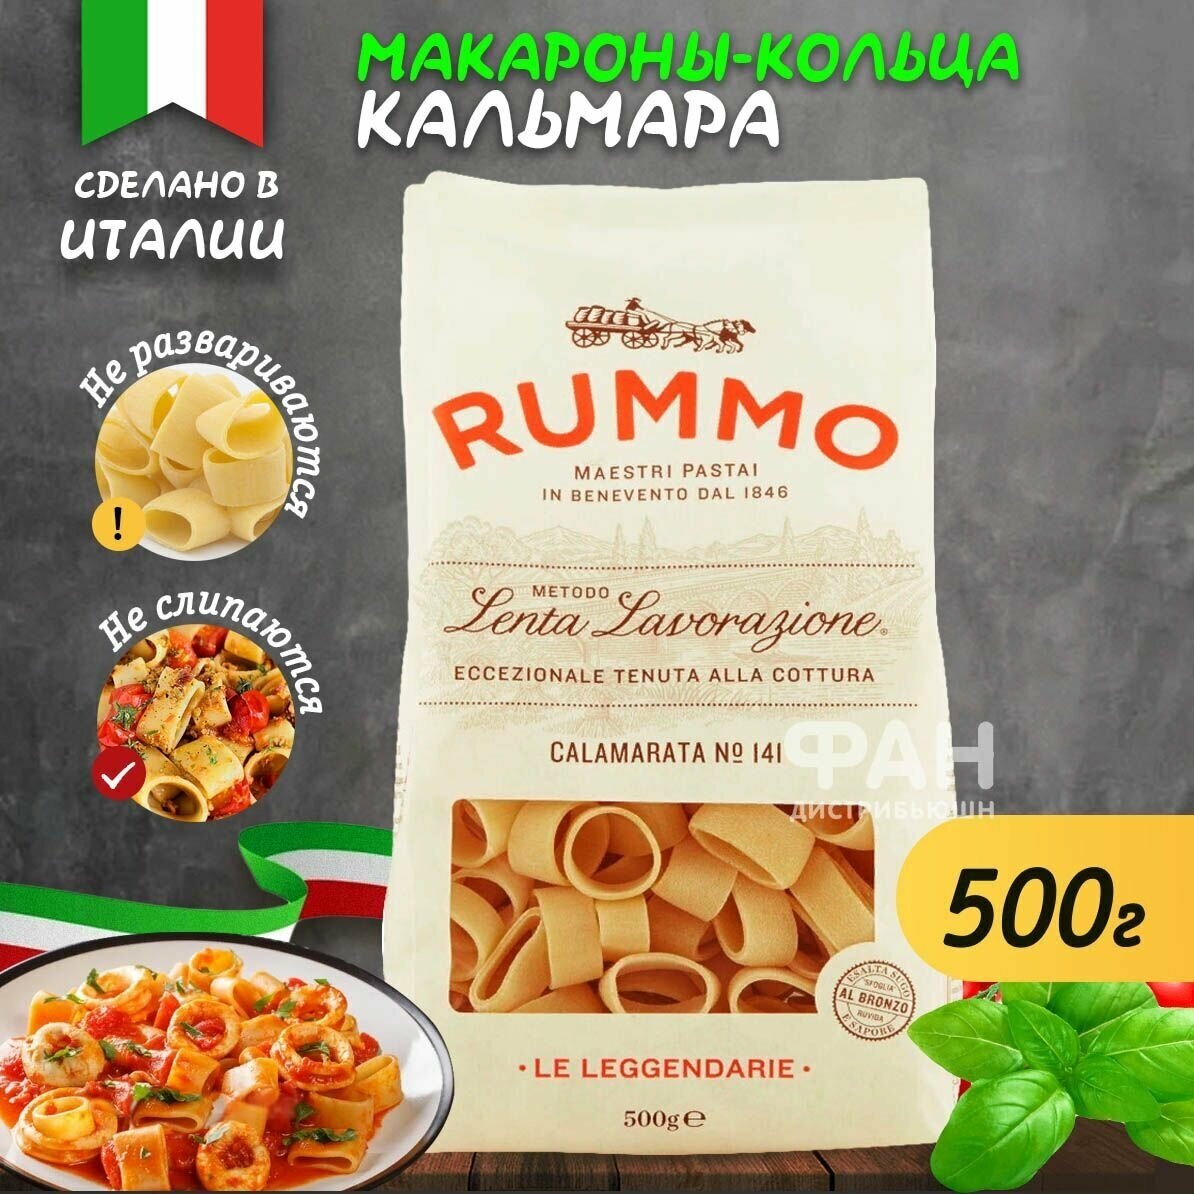 Макароны паста из твёрдых сортов пшеницы Rummo Особые Каламарата n.141, 500 гр.